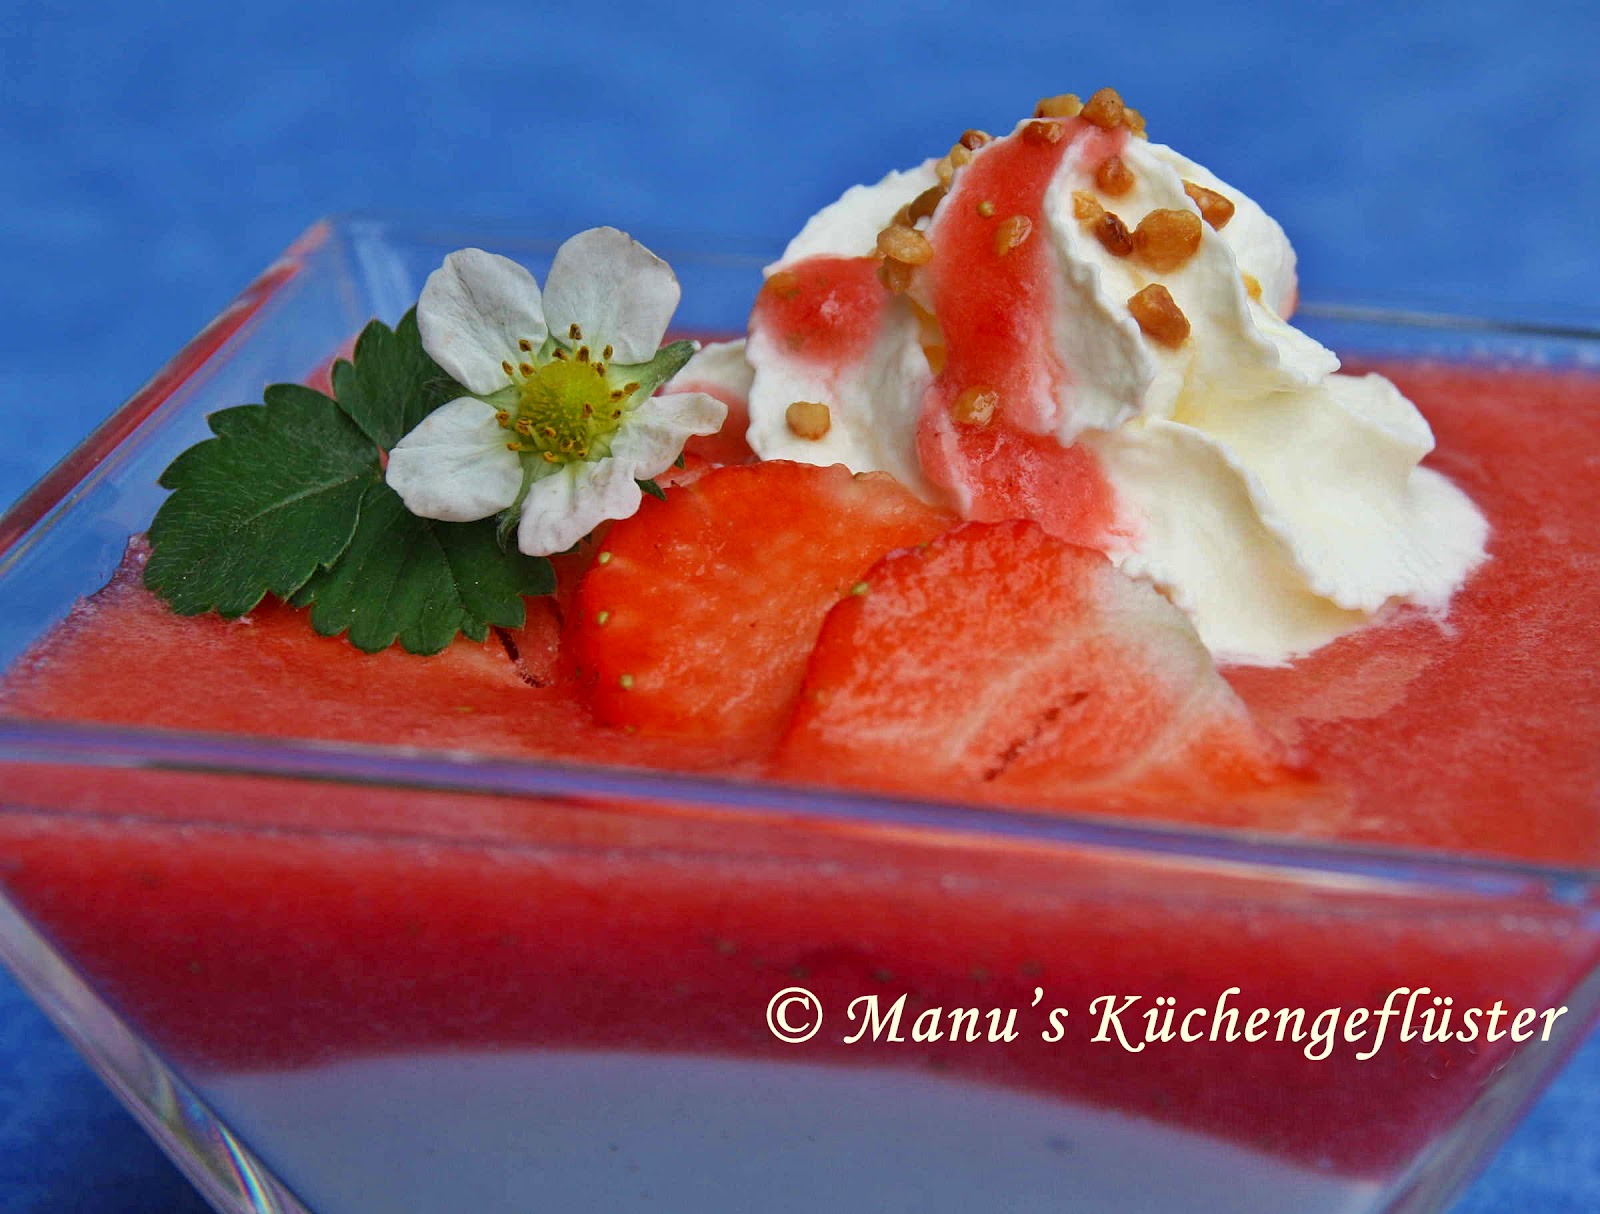 Manus Küchengeflüster: Quarkpudding mit Erdbeerpüree